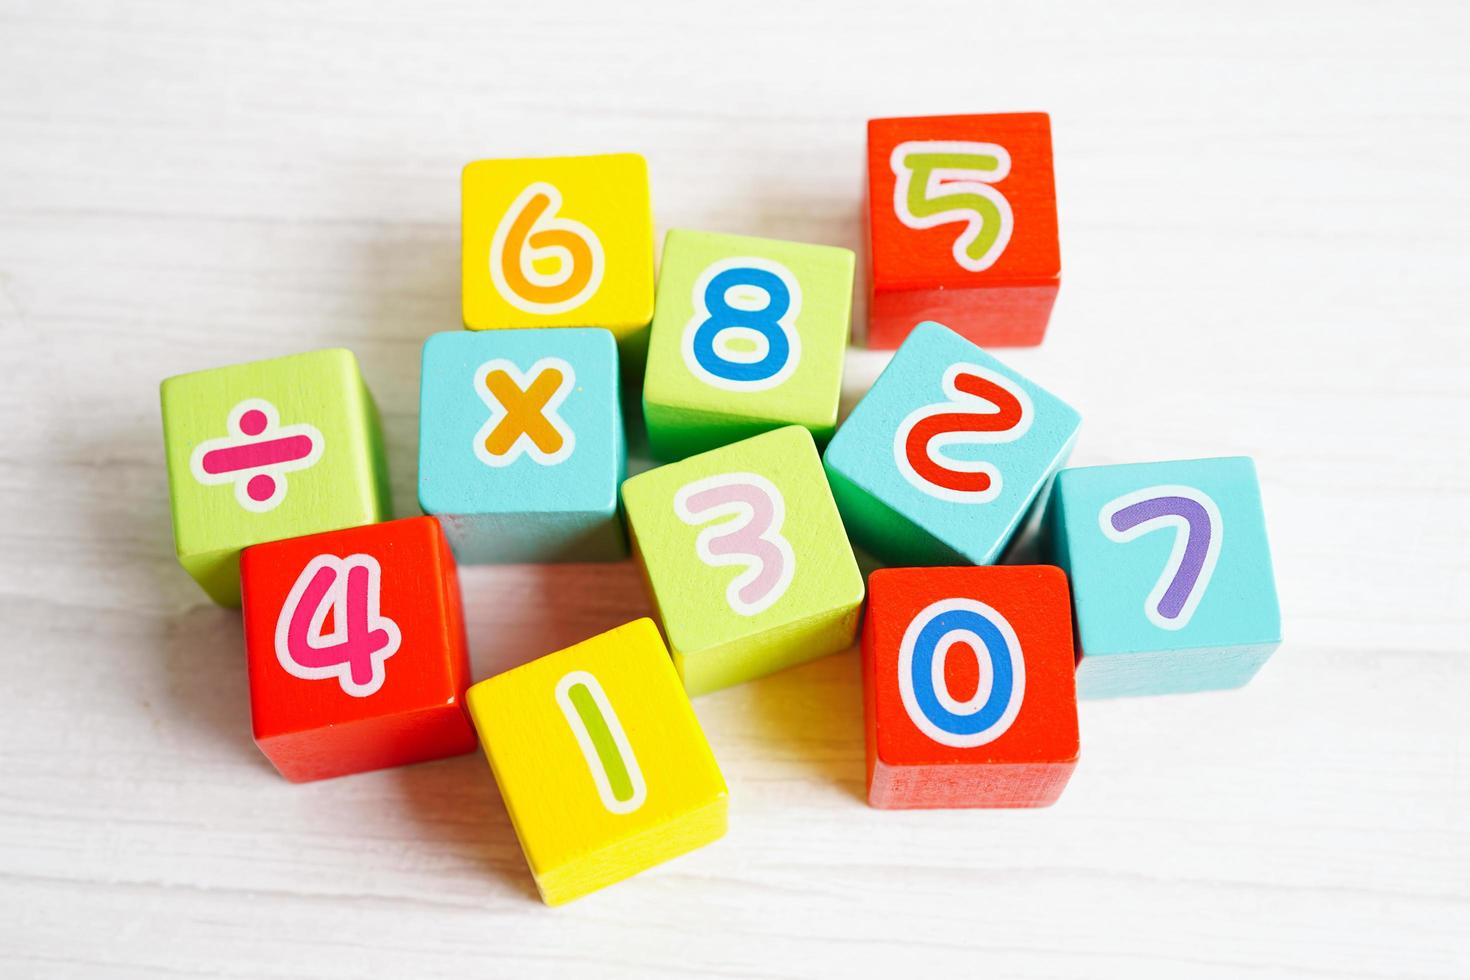 antal träklosskuber för att lära sig matematik, utbildningsmatematikkoncept. foto